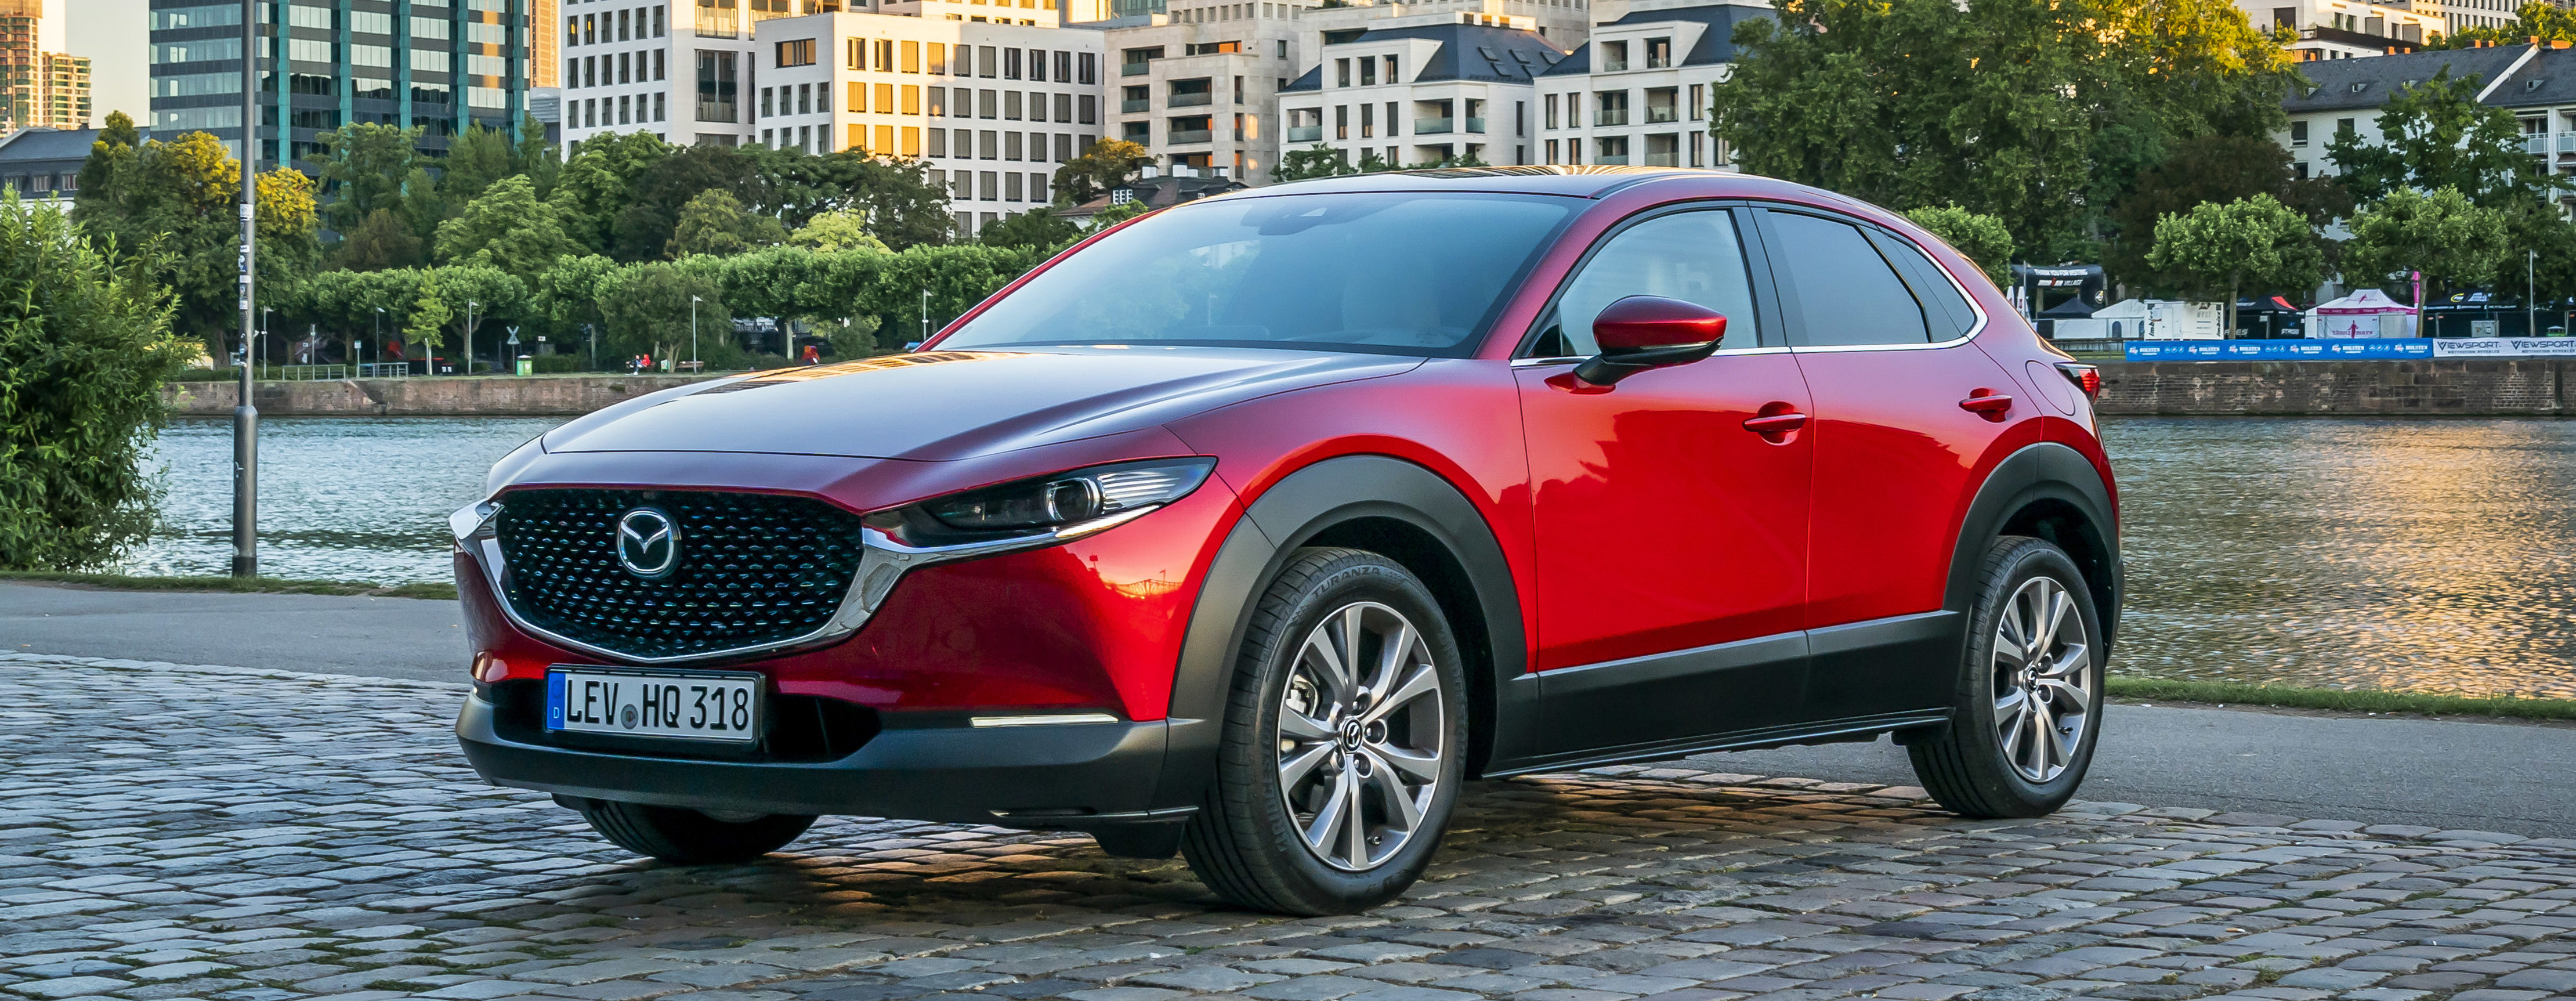 Mazda CX30 2019 Preise, technische Daten & Verkaufsstart